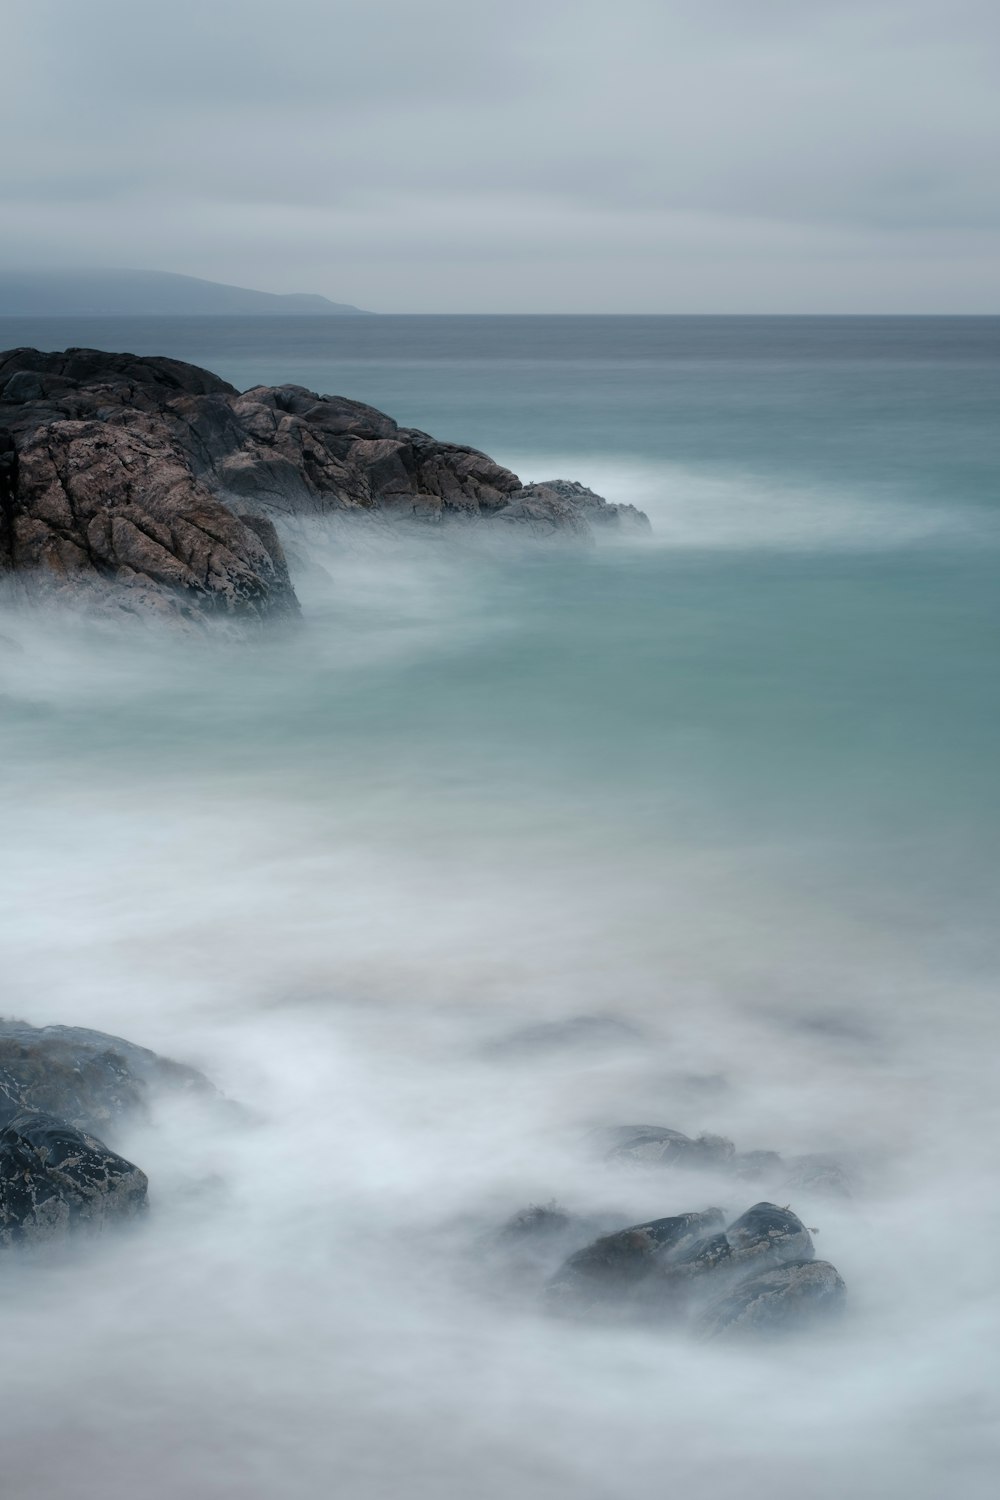 Les vagues de l’océan s’écrasent sur la formation de roche brune pendant la journée